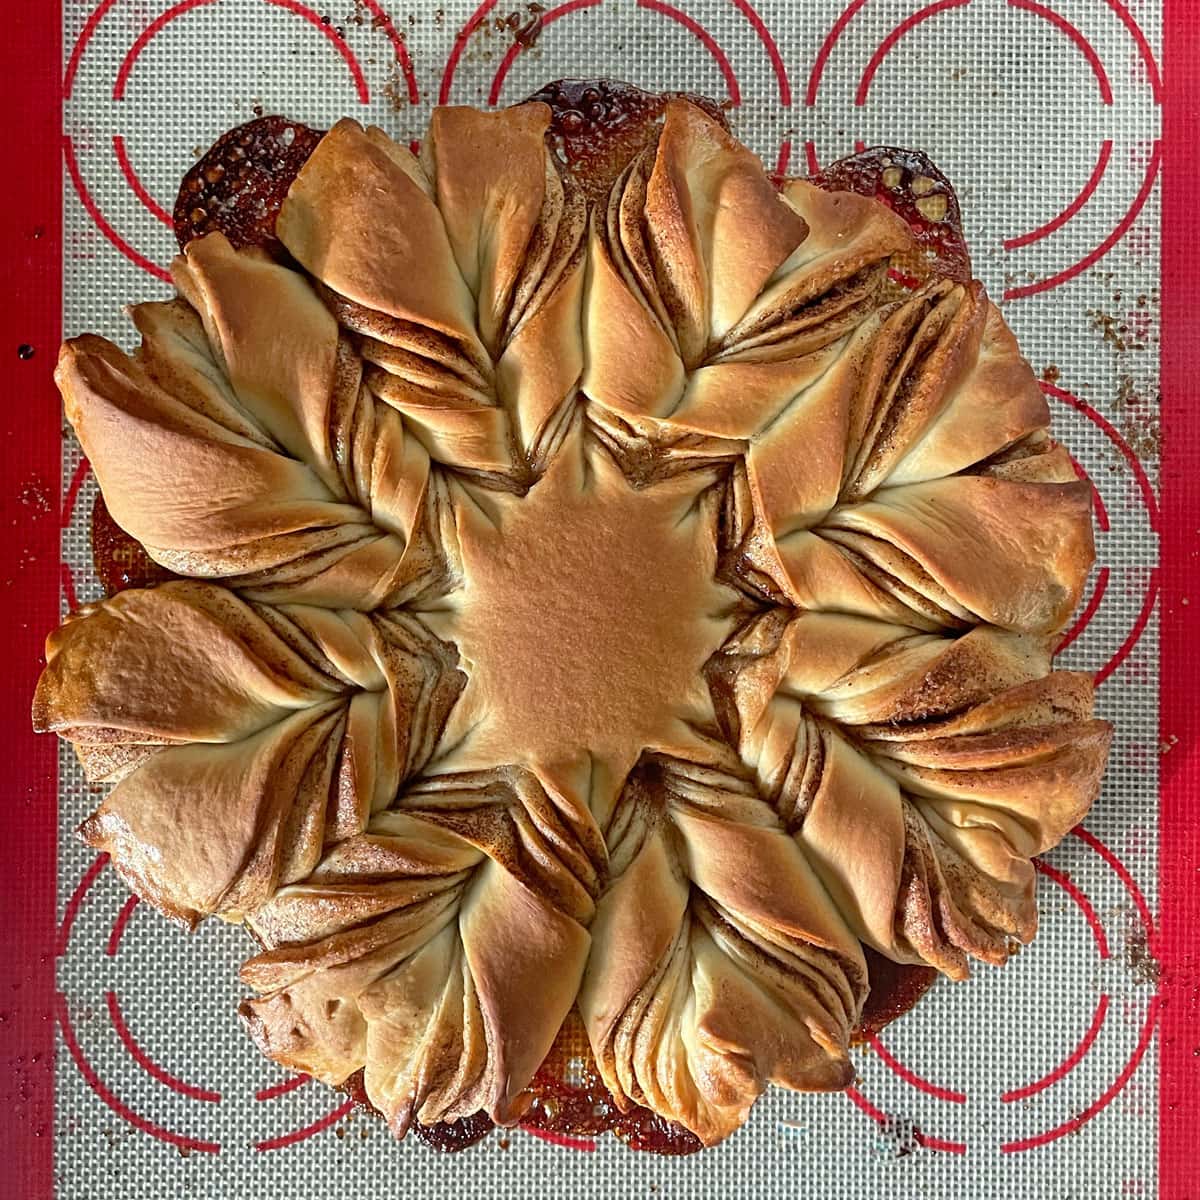 Baked star bread.